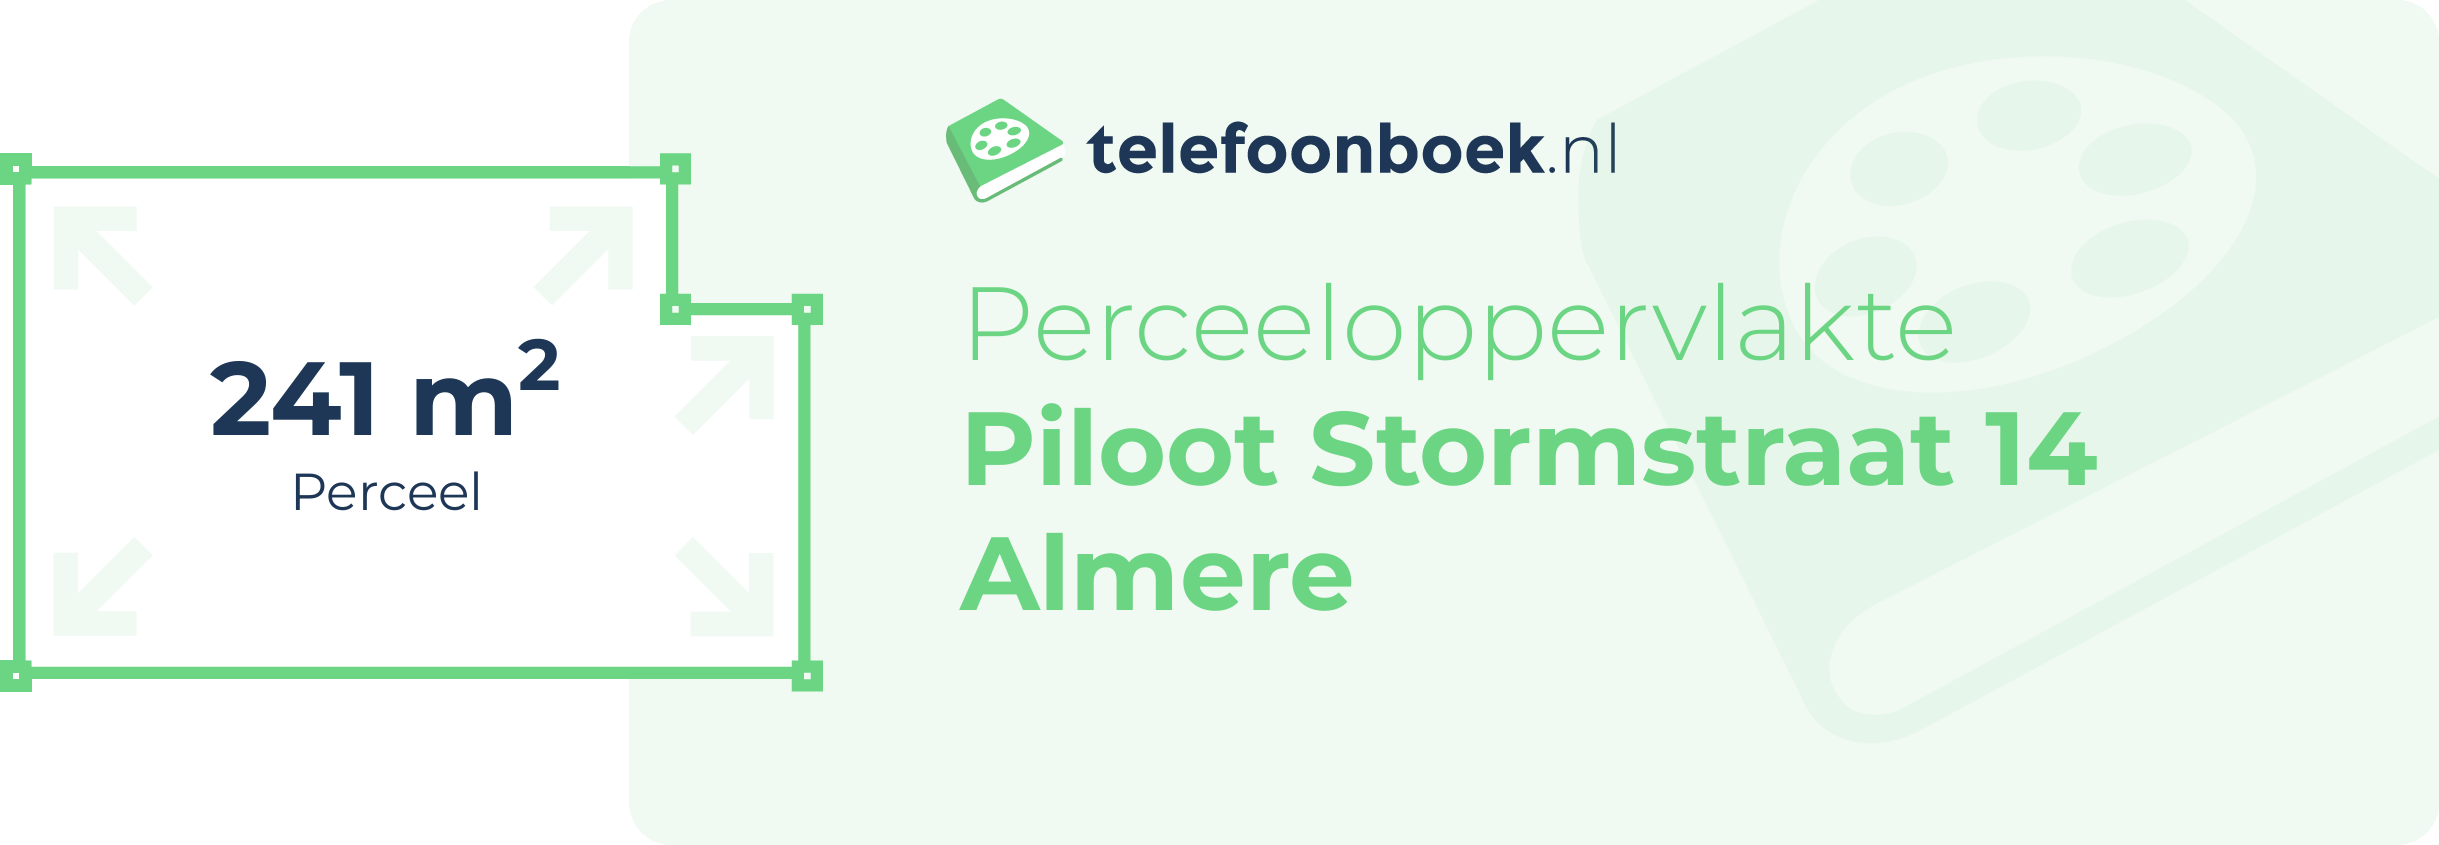 Perceeloppervlakte Piloot Stormstraat 14 Almere